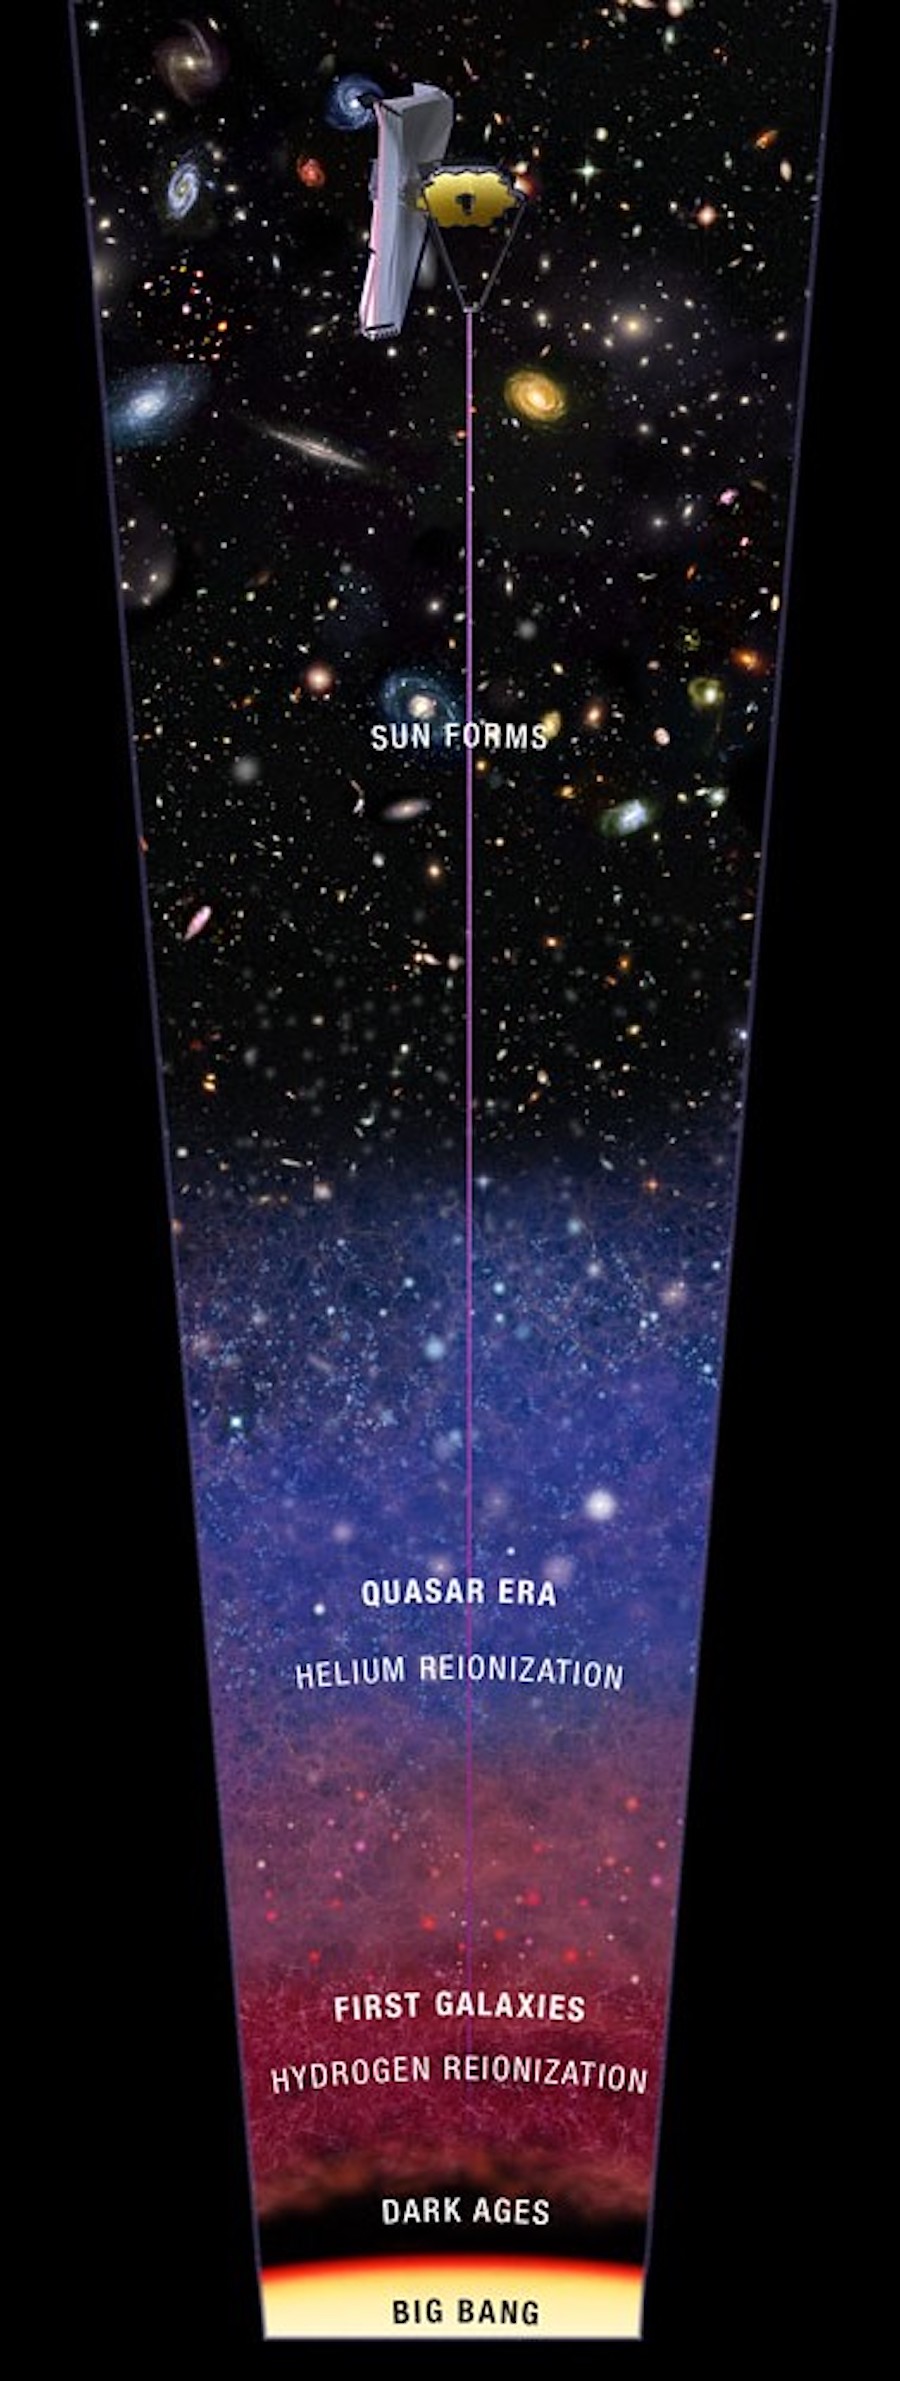 Сверху вниз: телескоп &laquo;Джеймс Уэбб&raquo;, Солнечная система, &laquo;эра квазаров&raquo;&nbsp;&mdash; одних из самых ярких объектов в видимой Вселенной, период образования первых галактик, Тёмные века Вселенной, Большой взрыв. Телескоп будет изучать область, смещенную в красный спектр